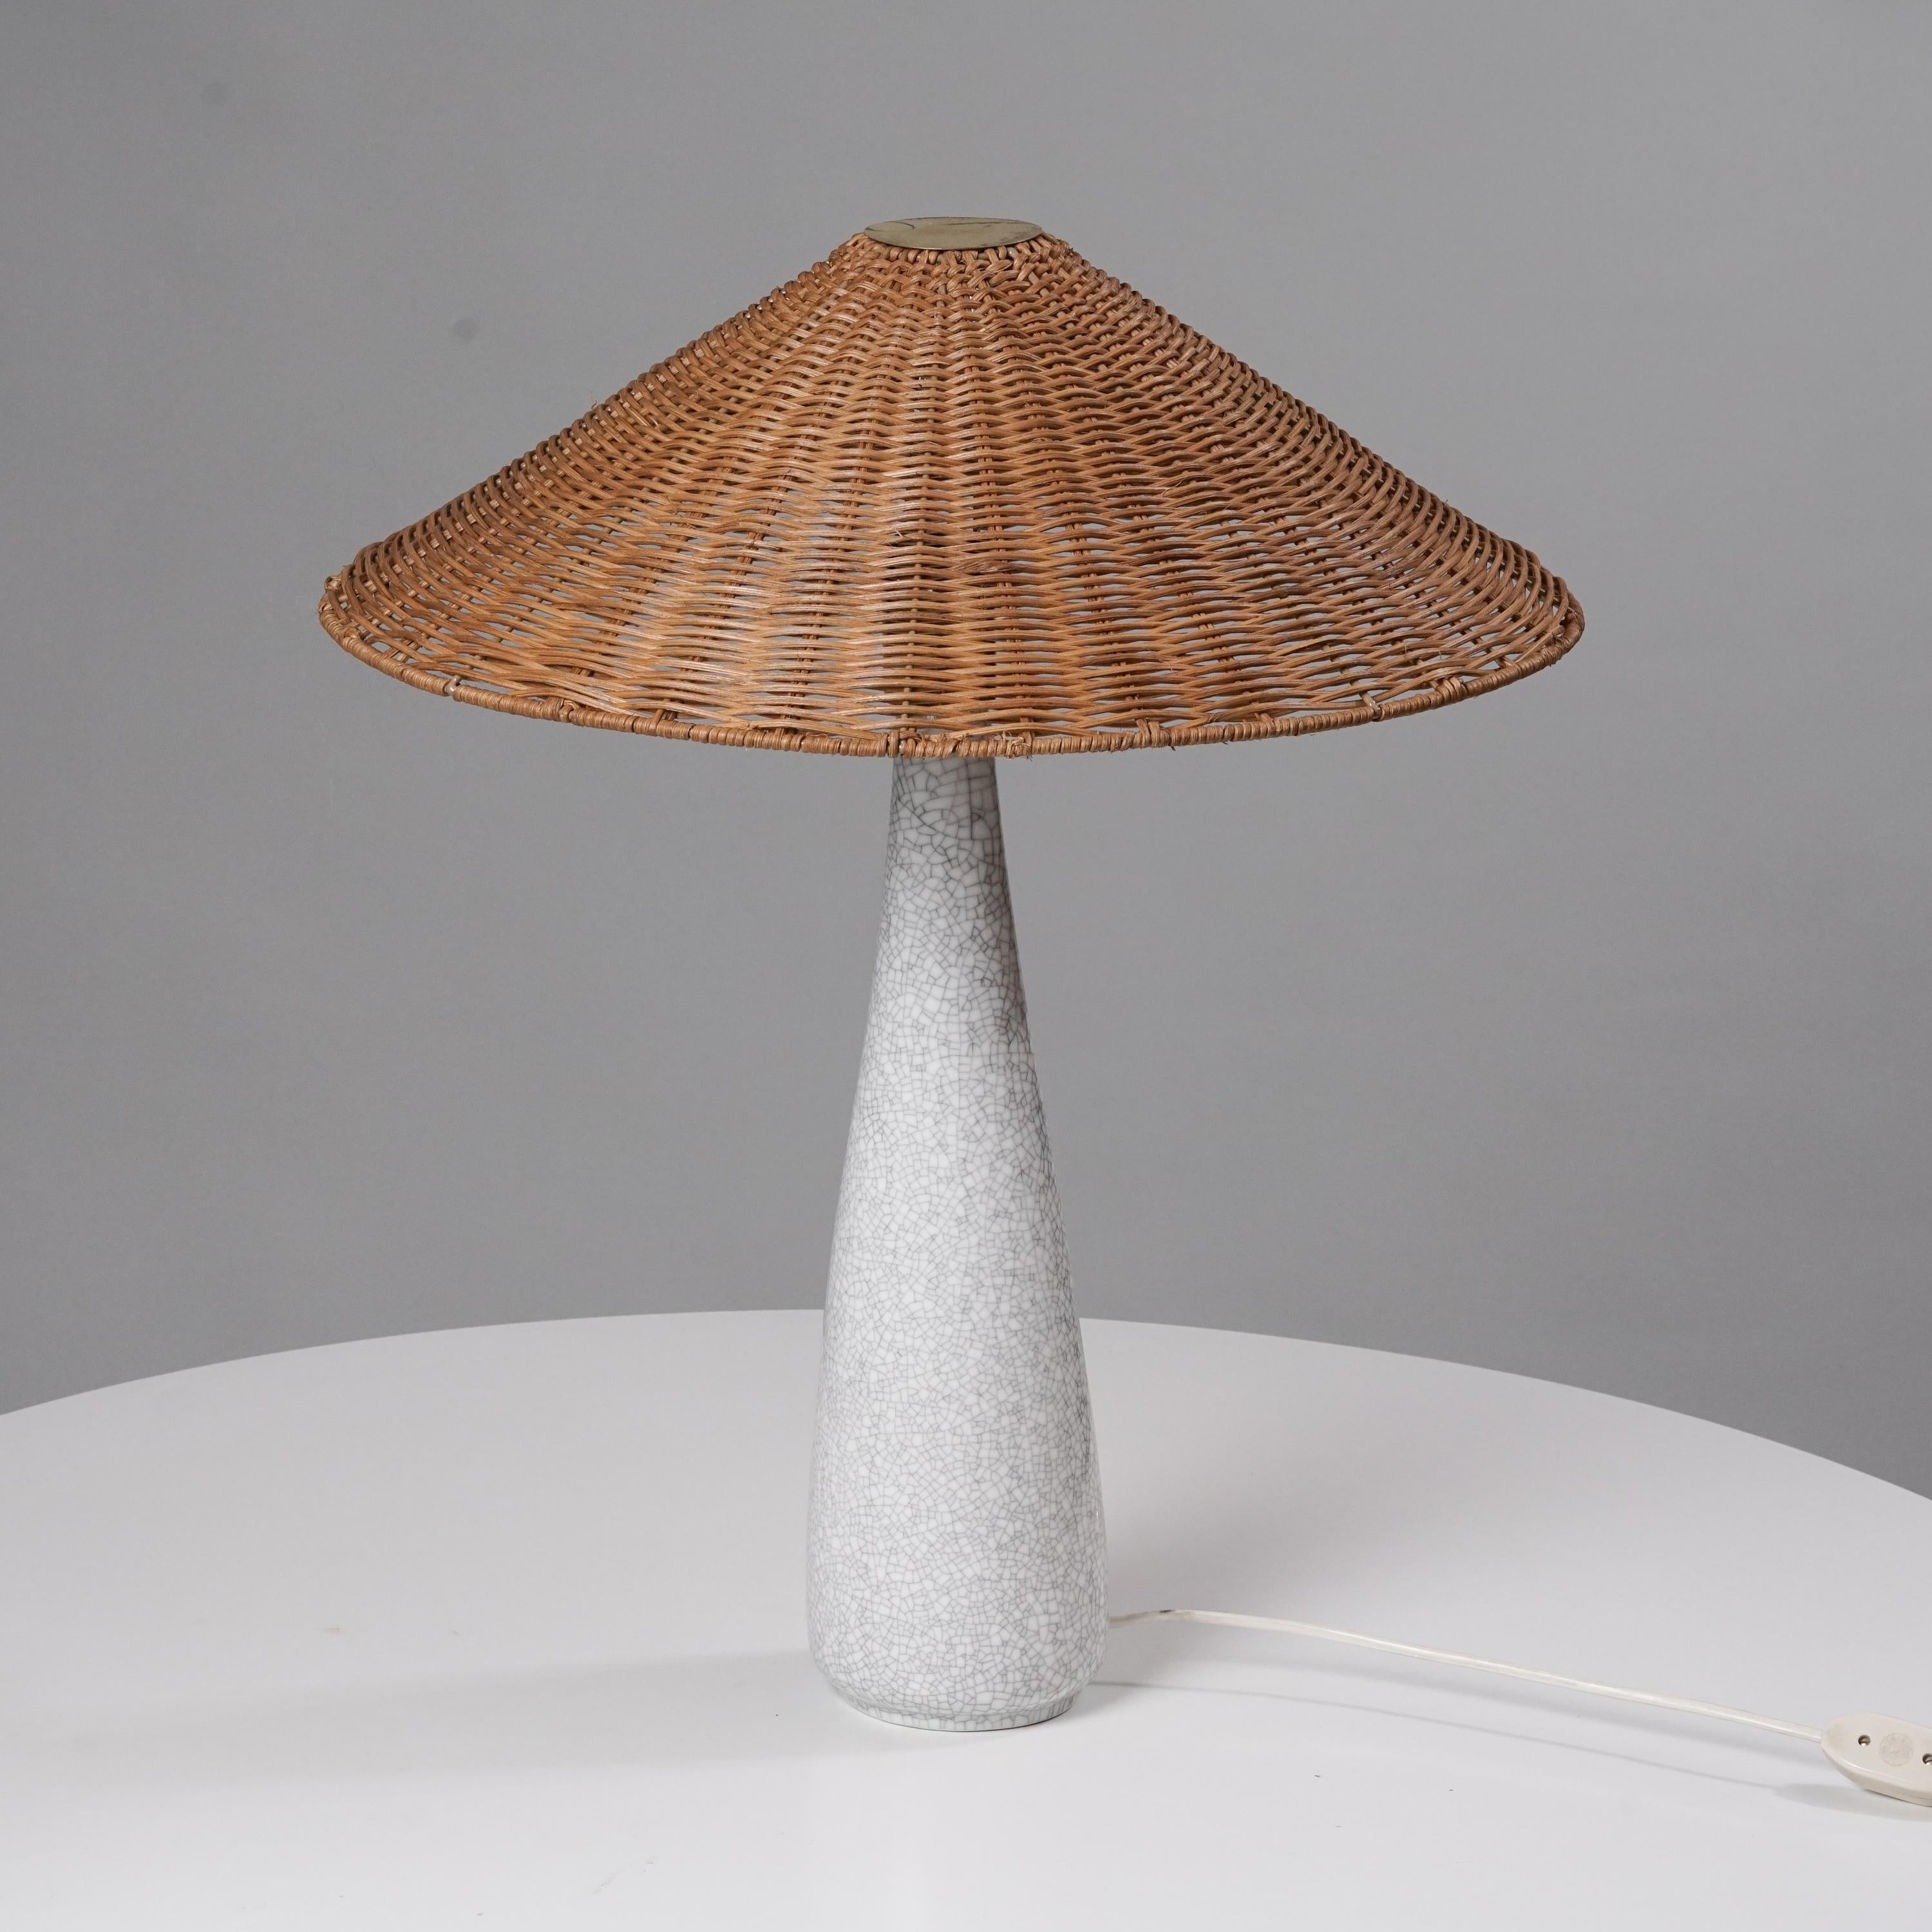 Lampe de table en céramique émaillée Toini Muona, fabriquée par Arabia, années 1950. Abat-jour en osier, détails en laiton. Marqué. Bon état vintage, patine mineure correspondant à l'âge et à l'utilisation. 

Toini Muona était un pionnier du